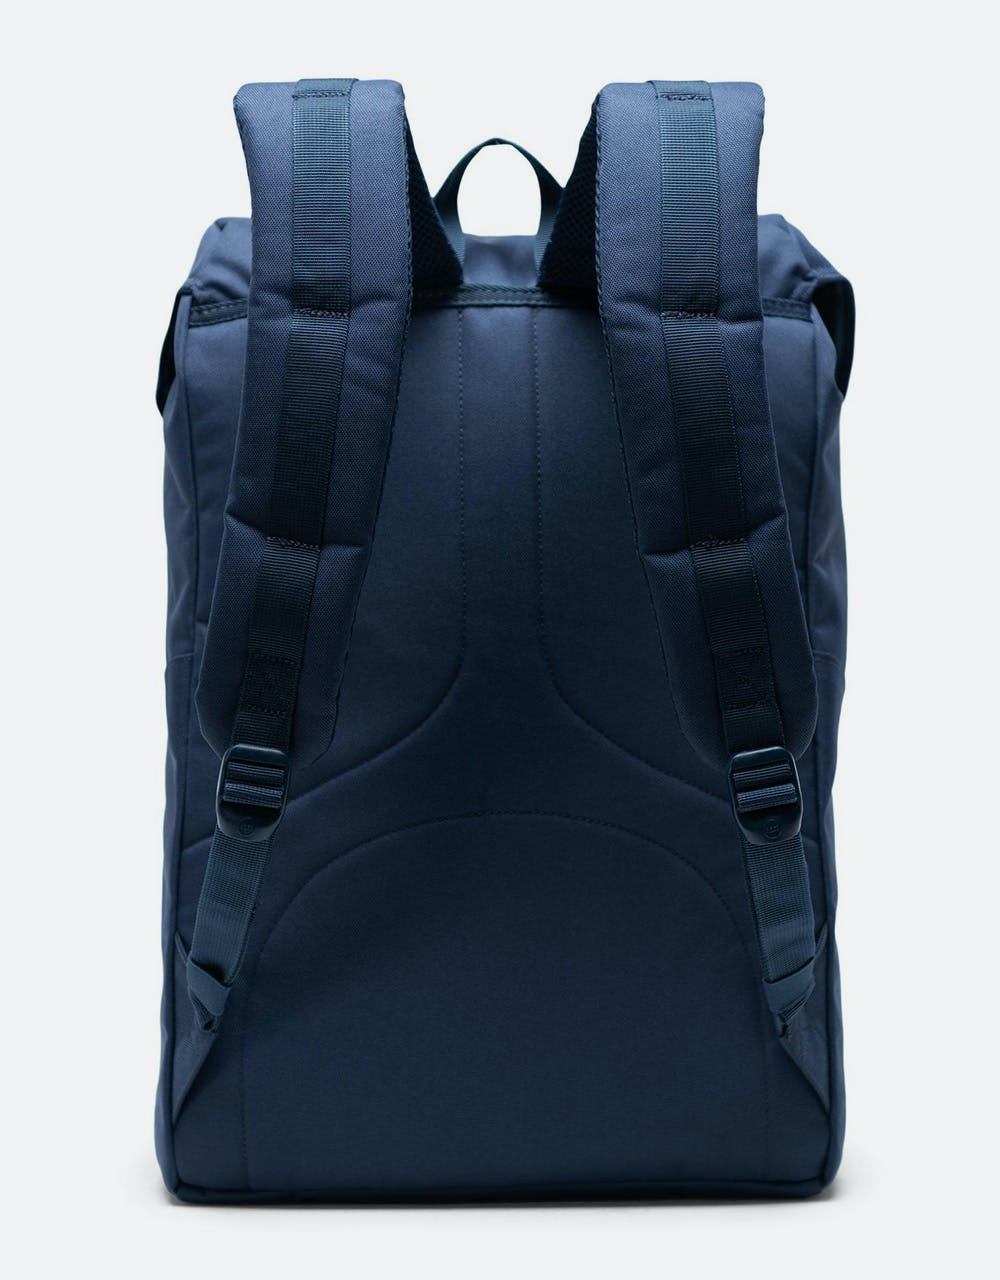 Herschel Supply Co. Buckingham Backpack - Navy/Tan